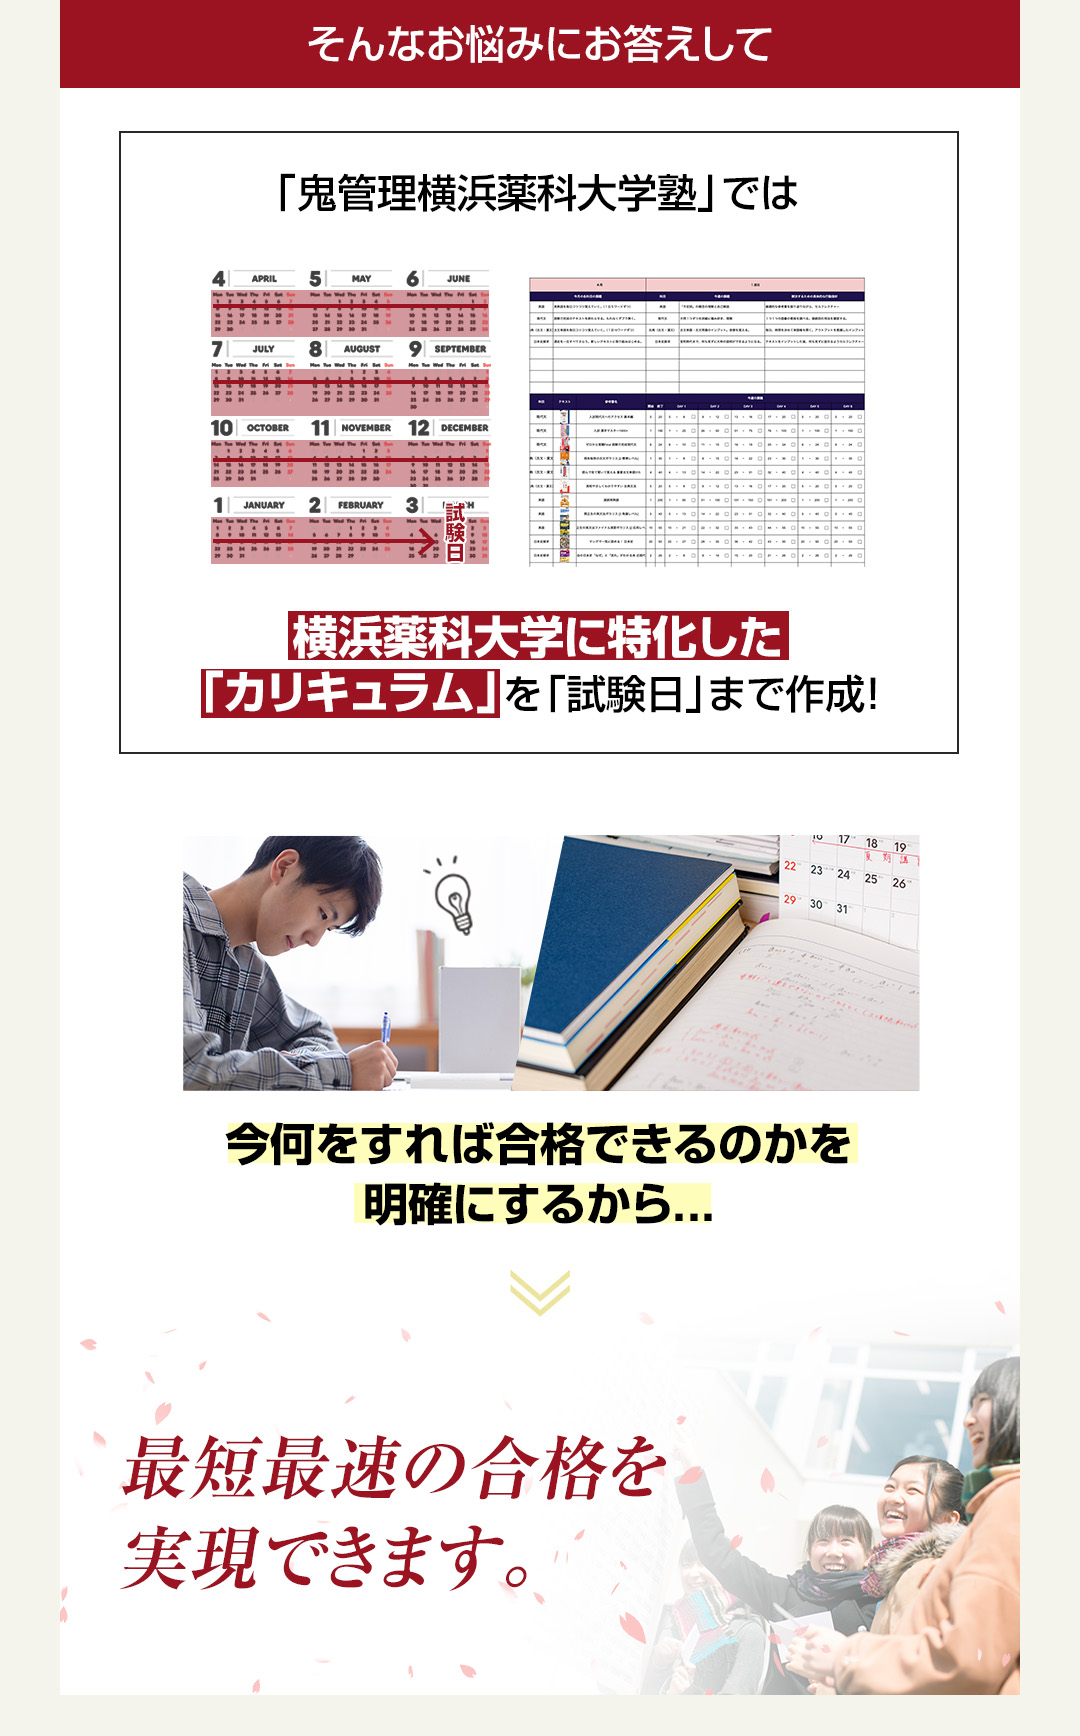 「鬼管理横浜薬科大学塾」では横浜薬科大学に特化した「カリキュラム」を「試験日」まで作成